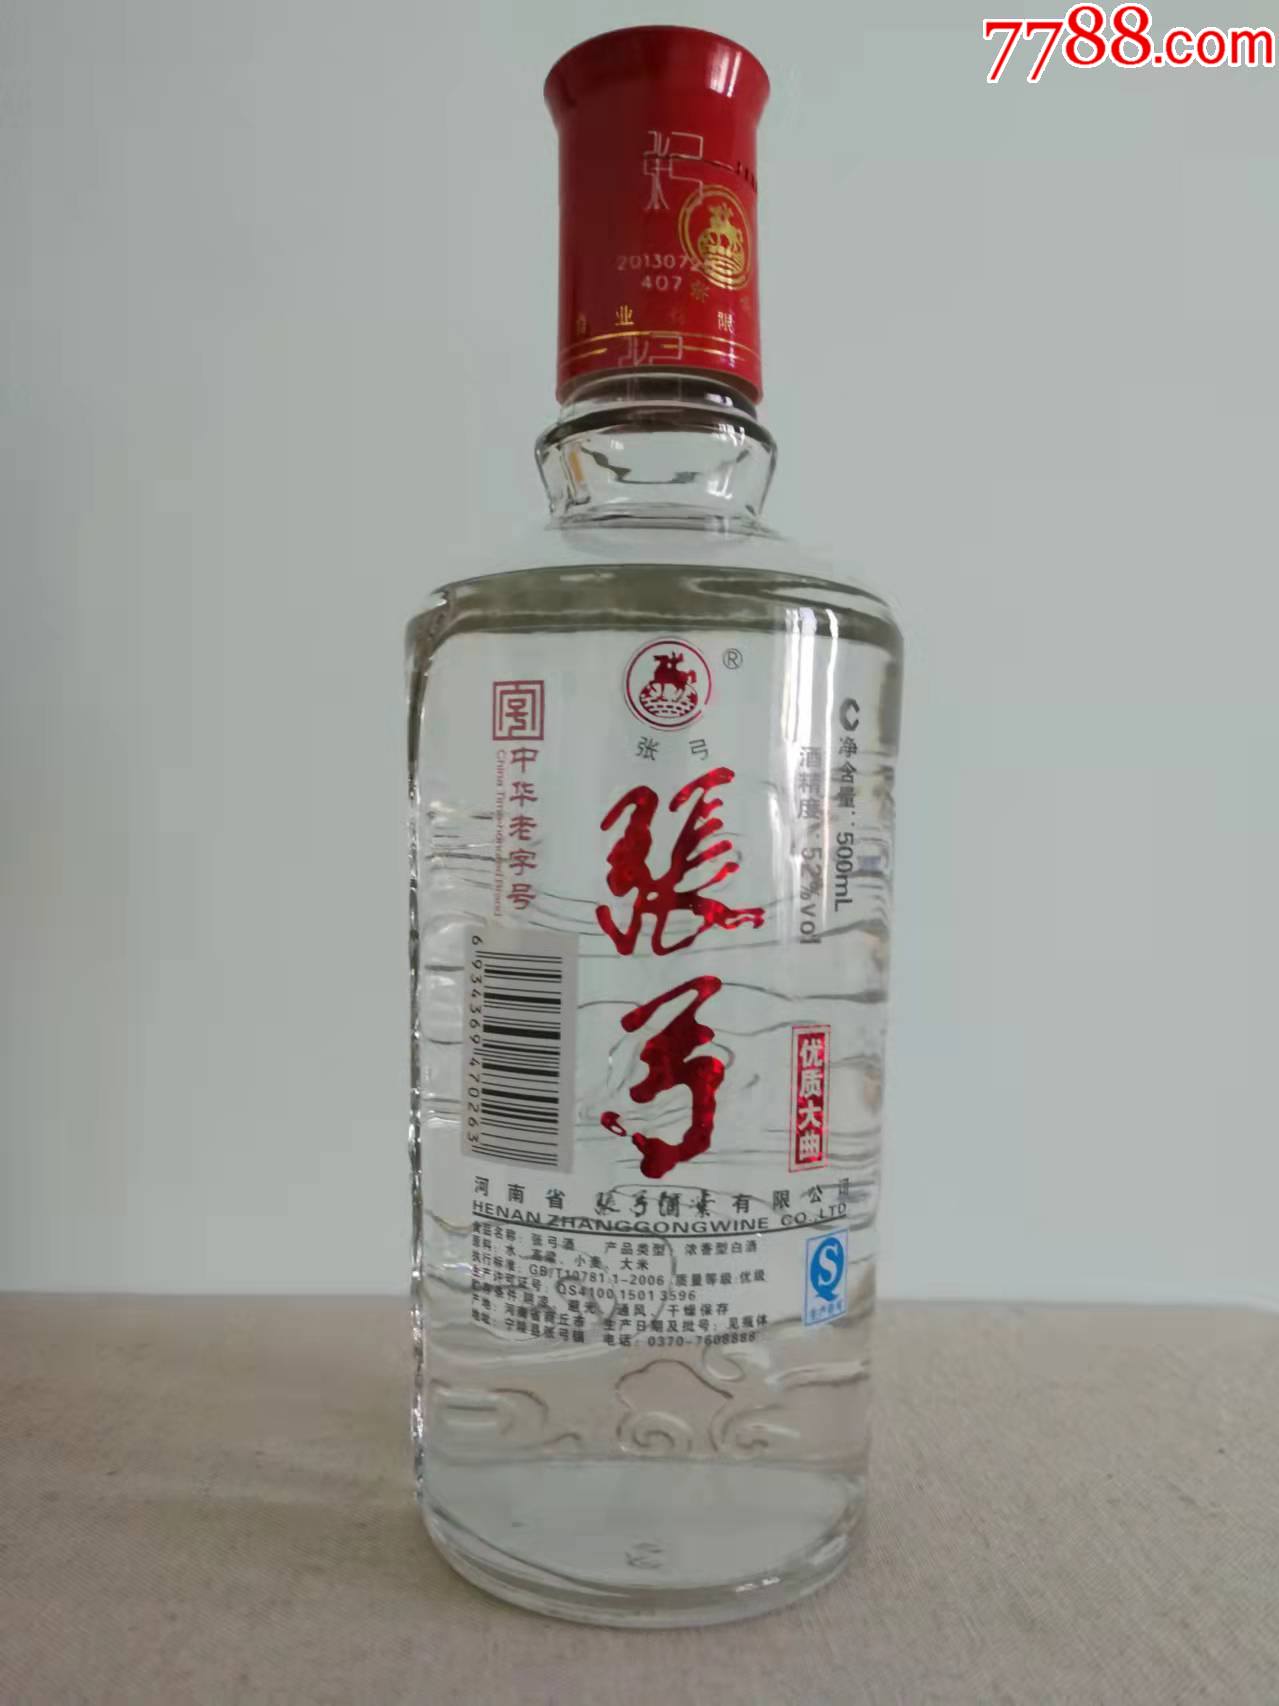 张弓酒2013年产中国53优质酒全国酒评银牌奖